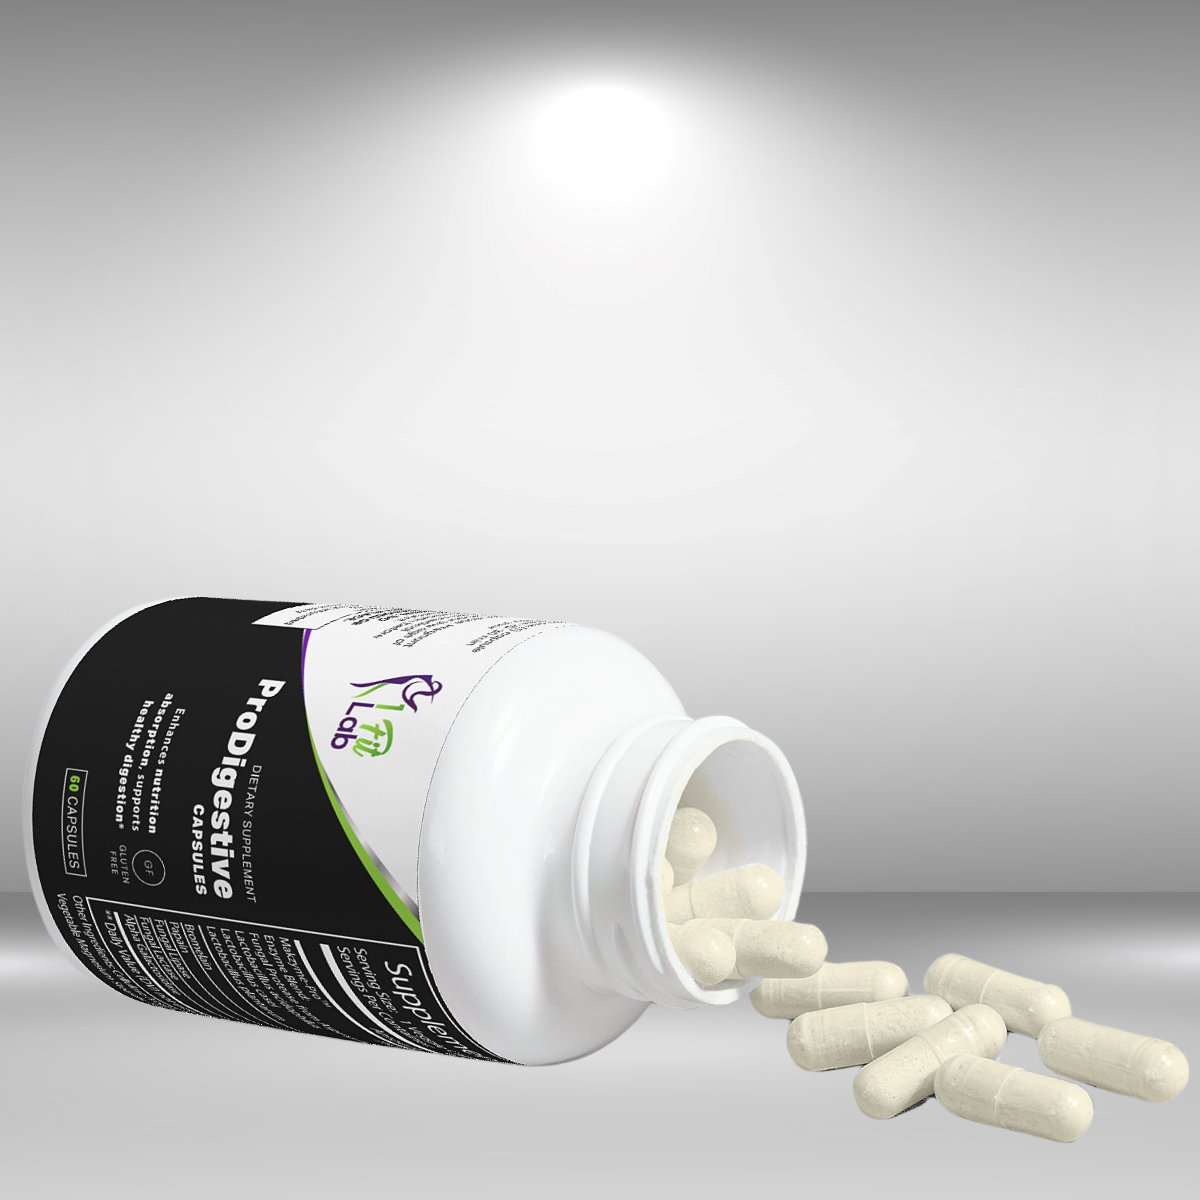 bottle and capsules of prodigestive premium probiotics supplement